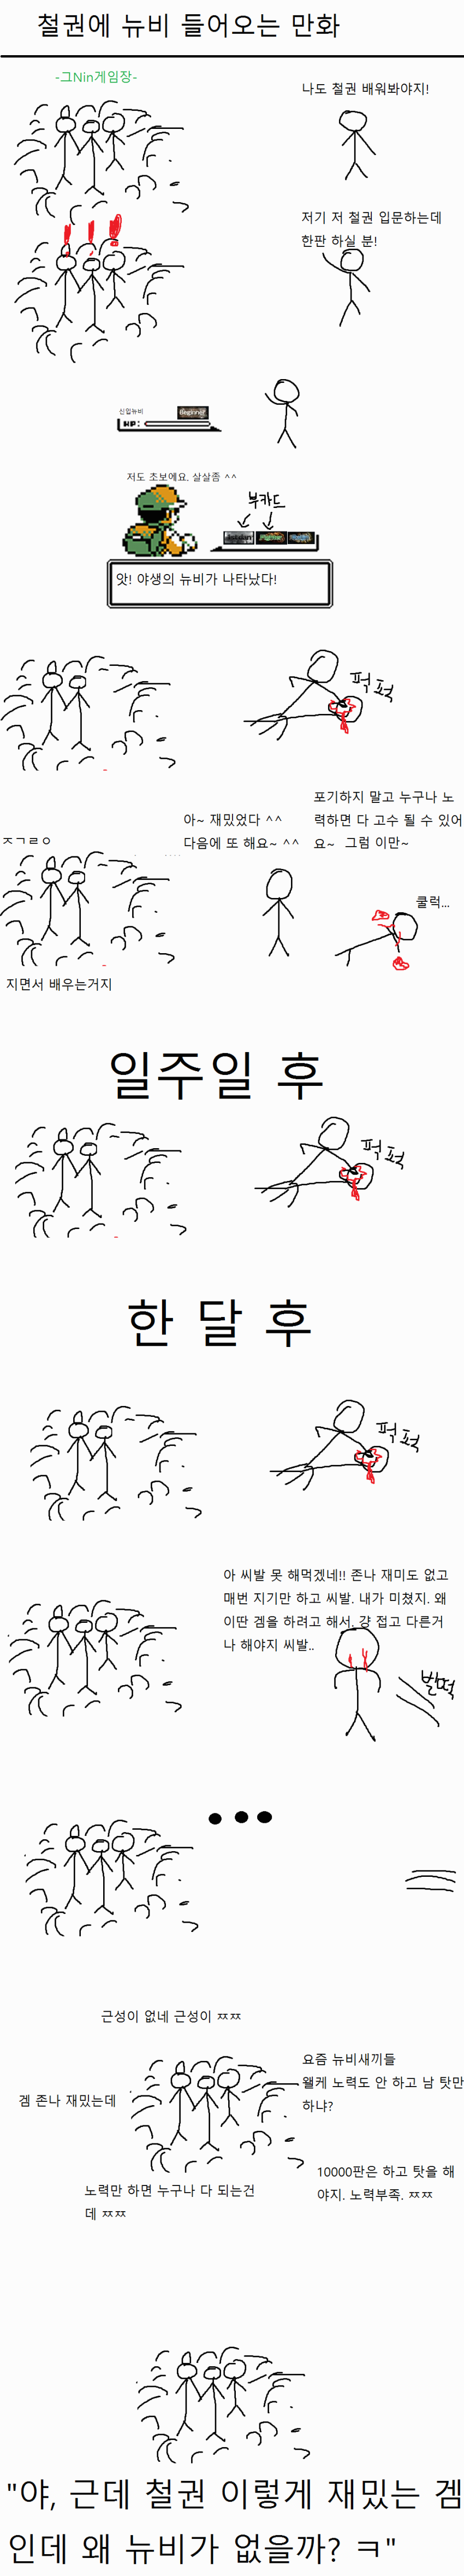 철권 뉴비입문하는 만화.png